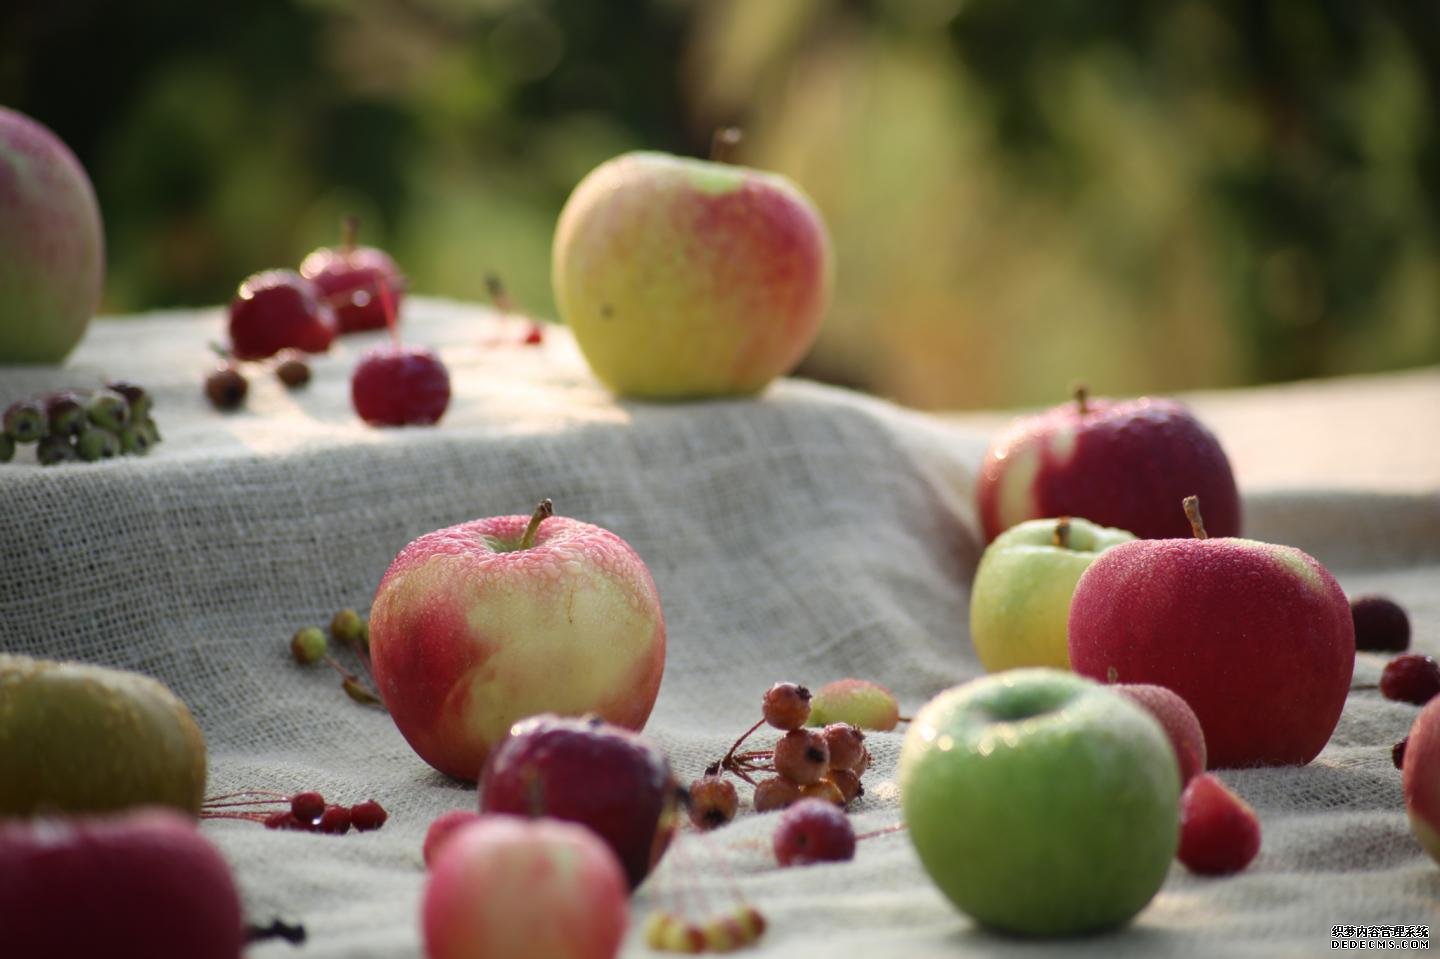 丝绸之路包含改良杏耀苹果的基因组资源